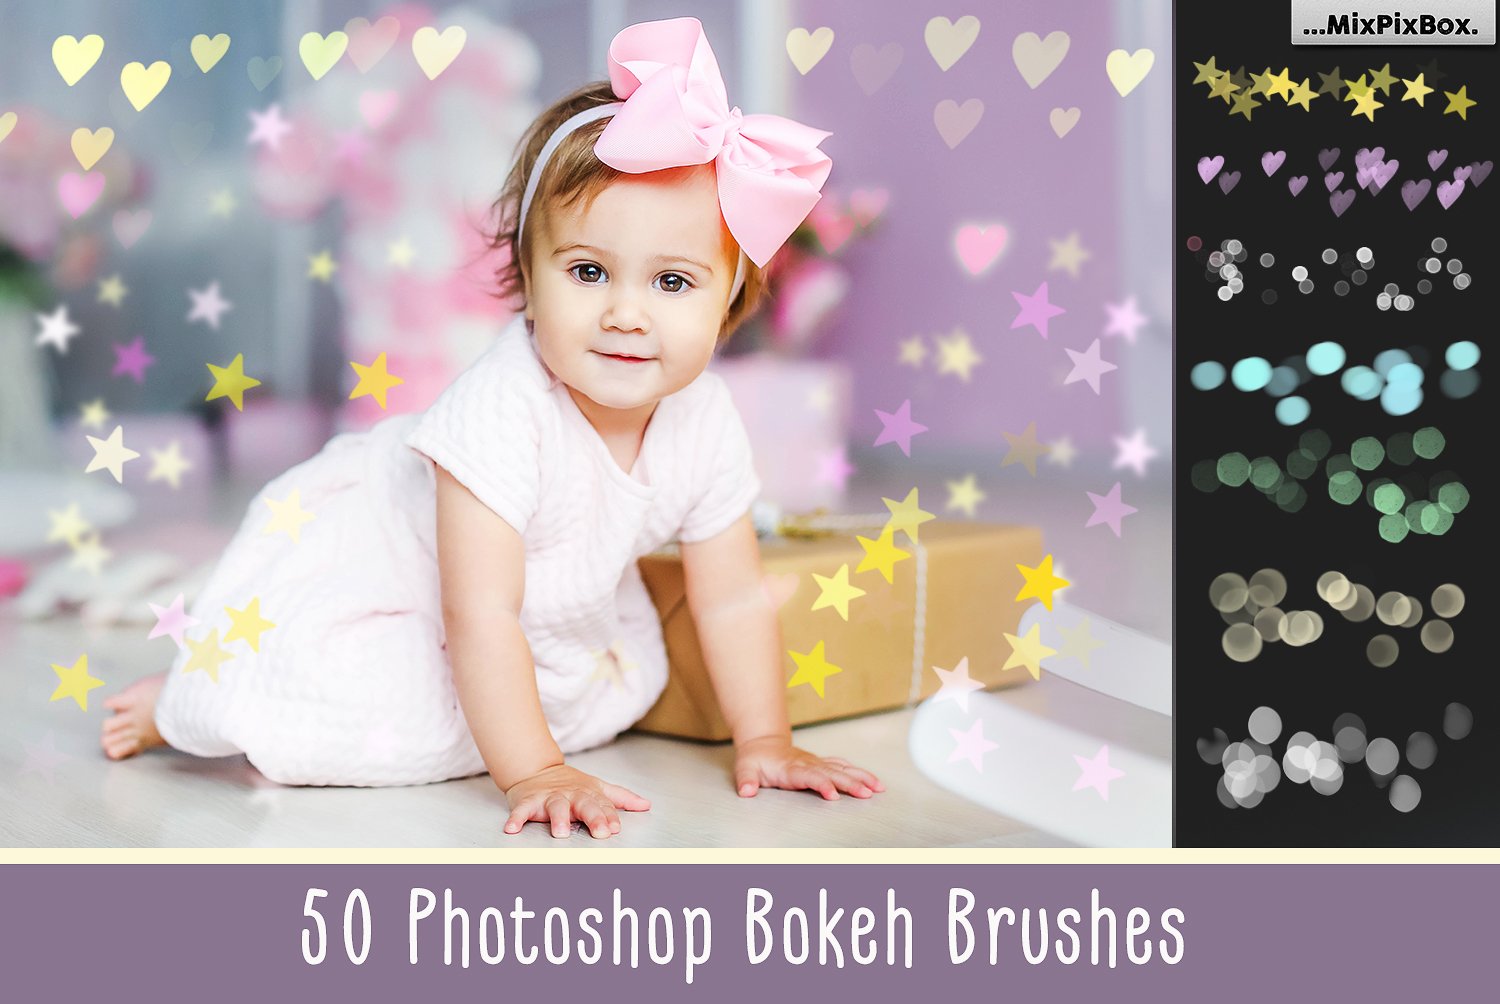 50 Bokeh Photoshop Brushescover image.